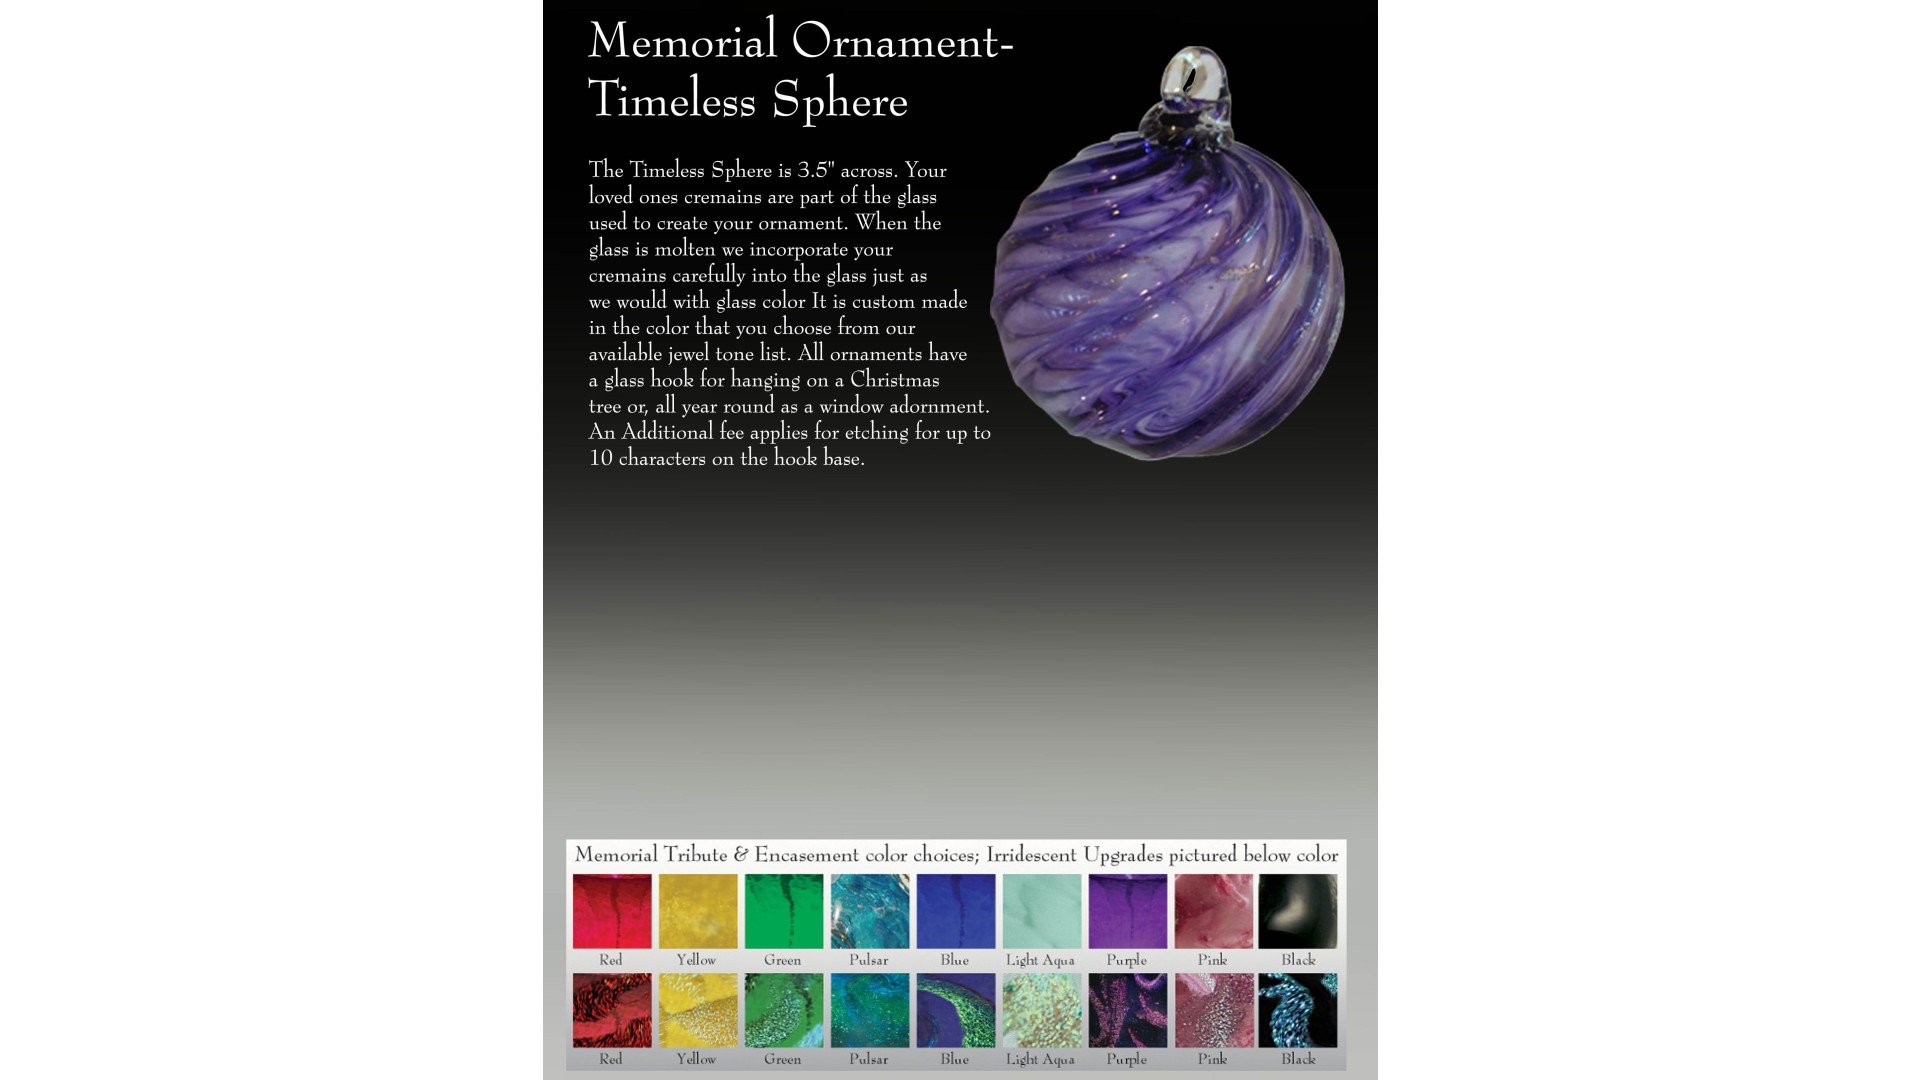 Memorial Ornament Timeless Sphere